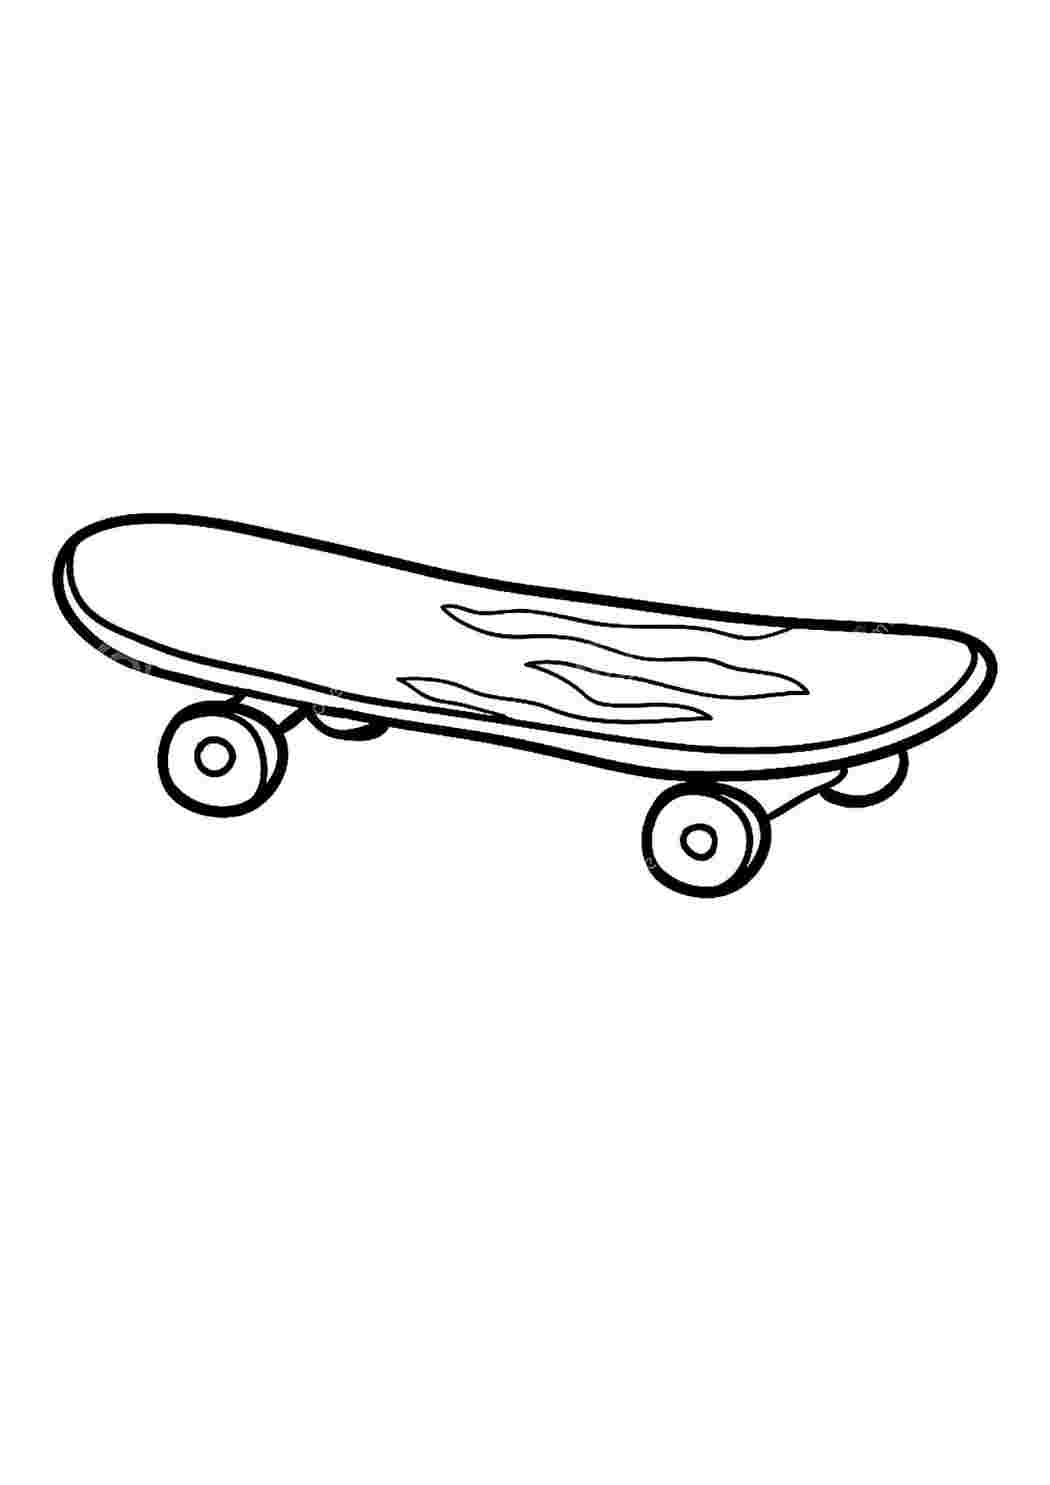 Скейтборд рисунок поэтапно